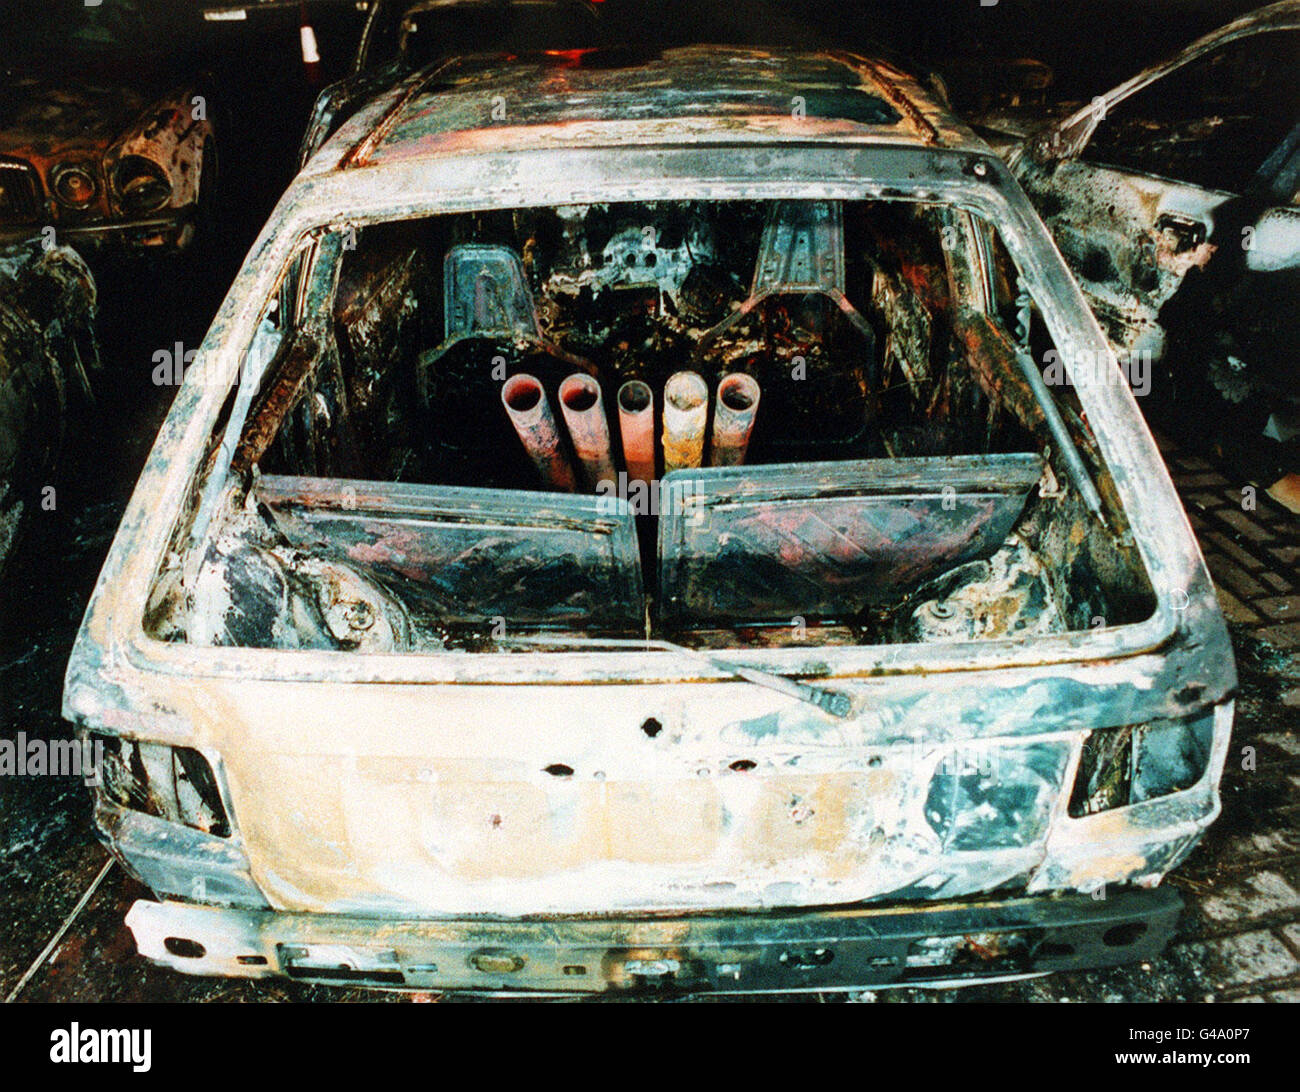 PA Library Foto del 10.03.94 (258246-11) : il Nissan Micra bruciato, che mostra le rube utilizzate per lanciare bombe mortaio all'aeroporto di Heathrow. La corte della corona di Woolwich ha sentito oggi (martedì) come l'IRA provvisorio sperava di causare "distruzione diffusa" quando lanciarono un attacco di mortaio 'smesso' e 'agghiacciante' a Heathrow nel marzo 1994. Foto PA. Vedi PA Story COURTS IRA Foto Stock